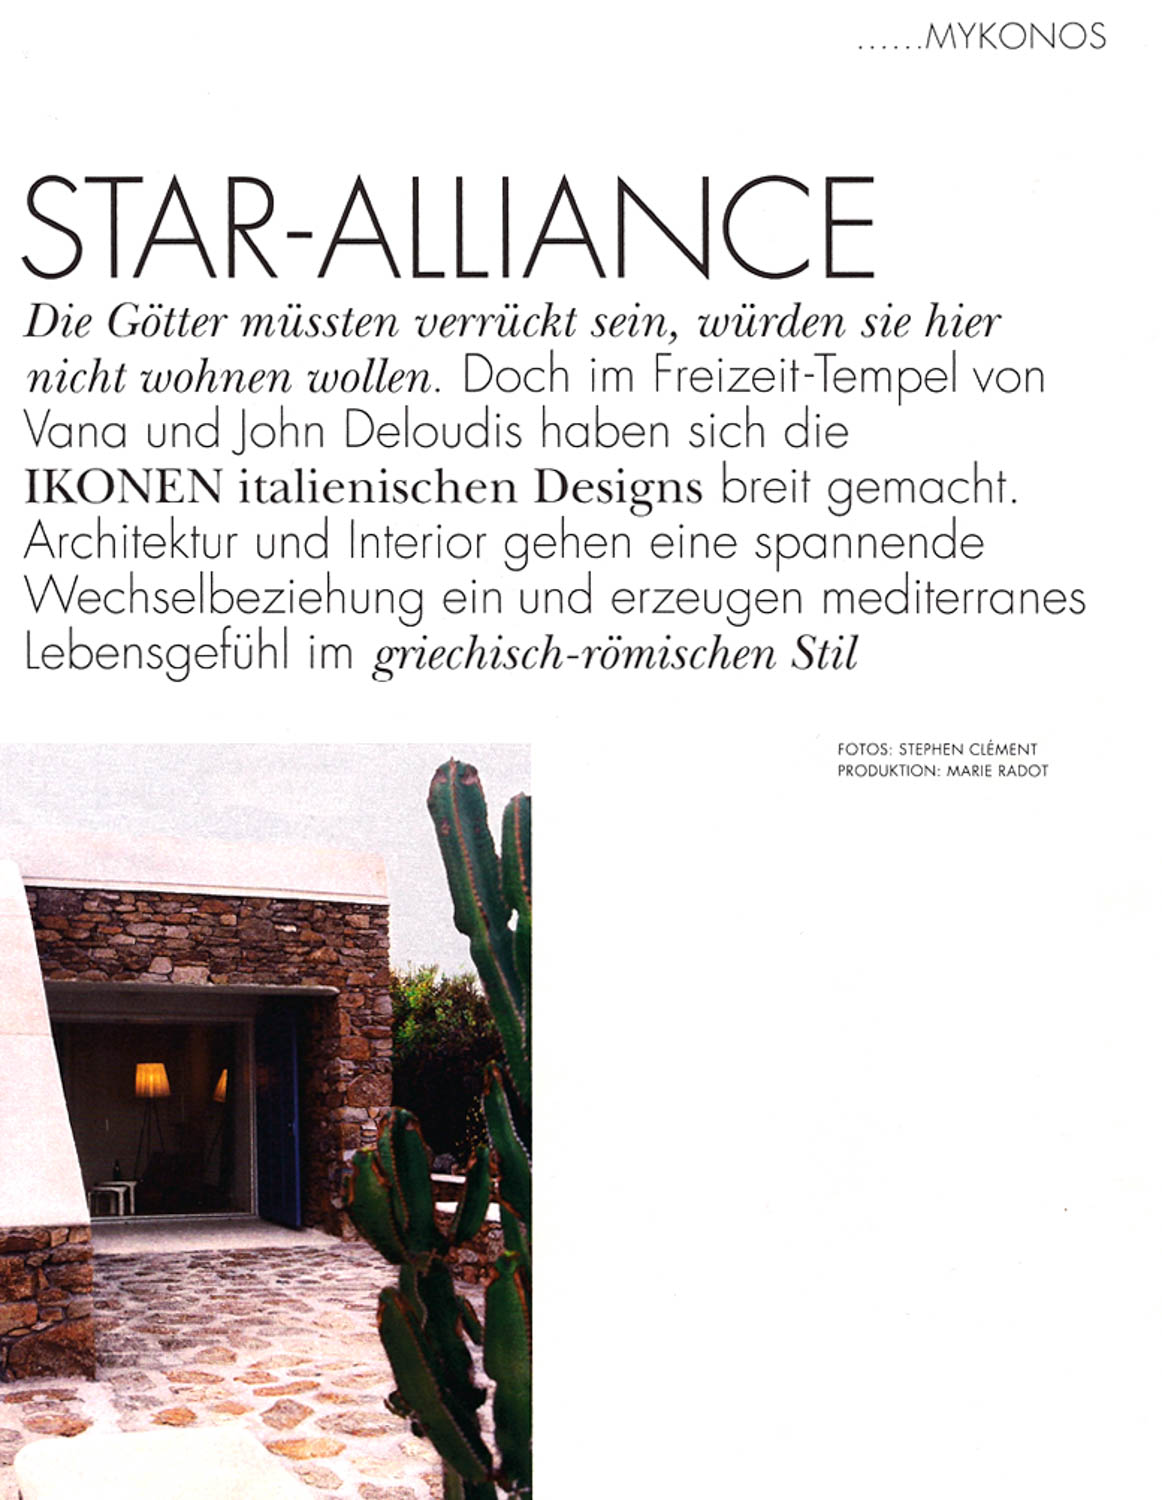 Star-Alliance